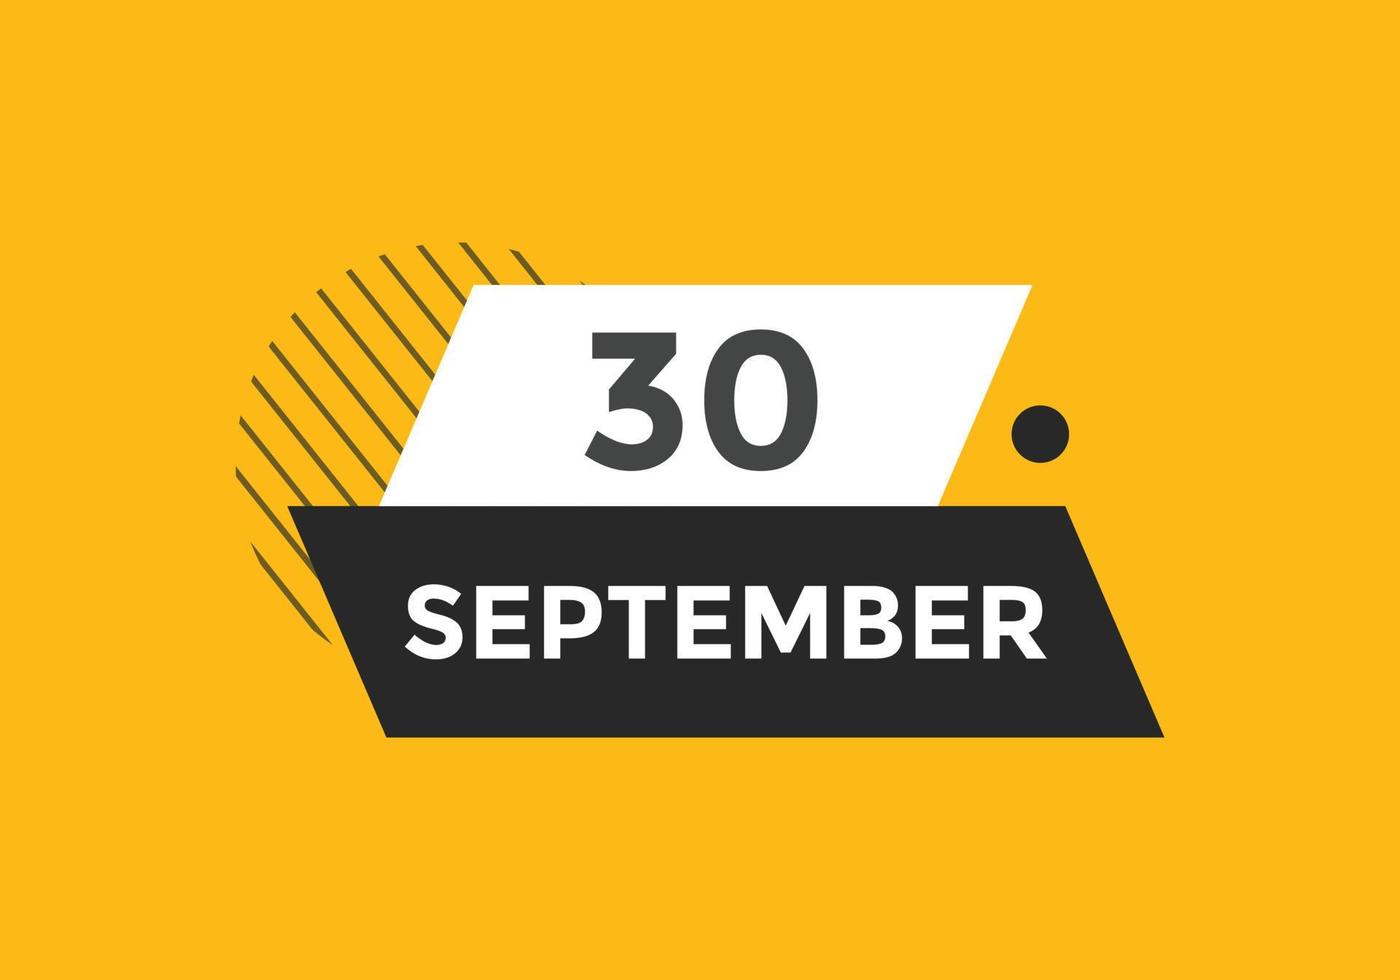 30. September Kalendererinnerung. 30. september tägliche kalendersymbolvorlage. Kalender 30. September Icon-Design-Vorlage. Vektor-Illustration vektor